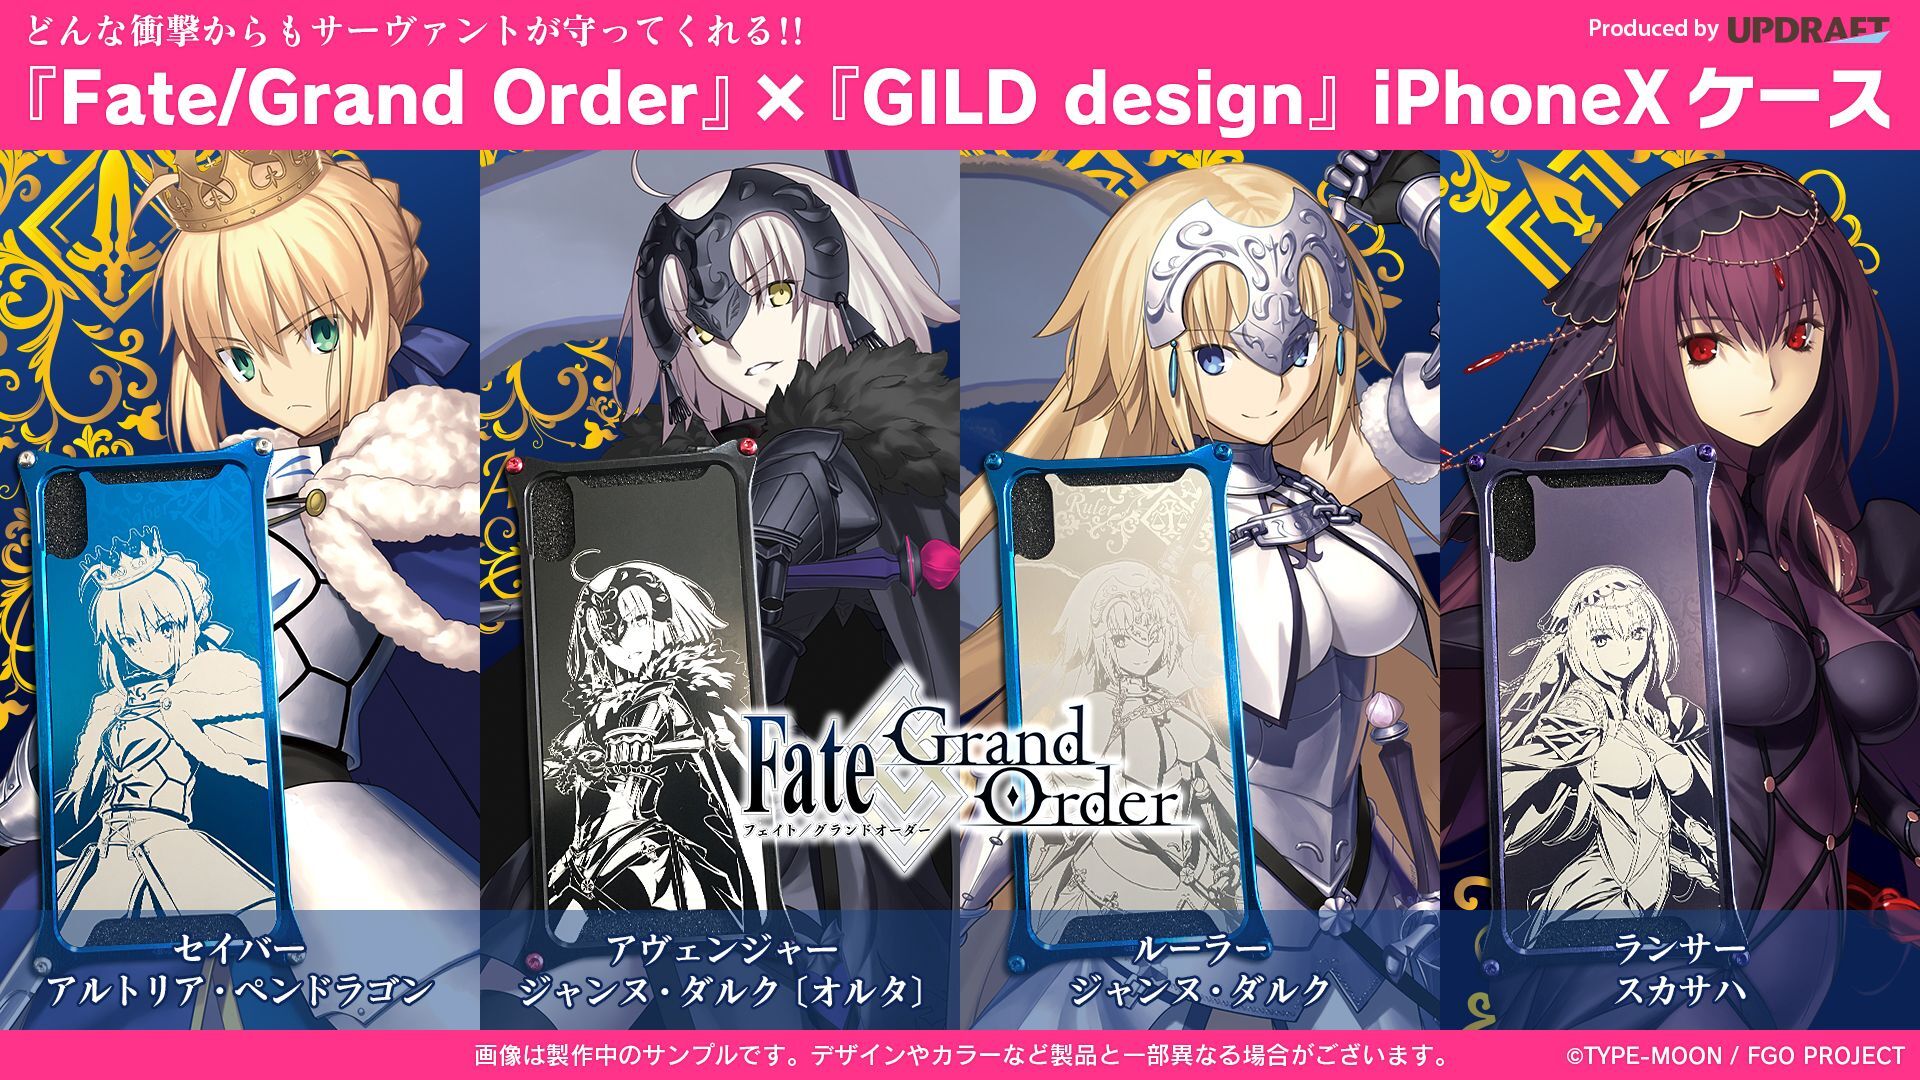 どんな衝撃からもサーヴァントが守ってくれる 累計1 200万dl突破 Fate Grand Order Gild Design Iphonexケース Ud Premium で予約開始 株式会社アップドラフトのプレスリリース